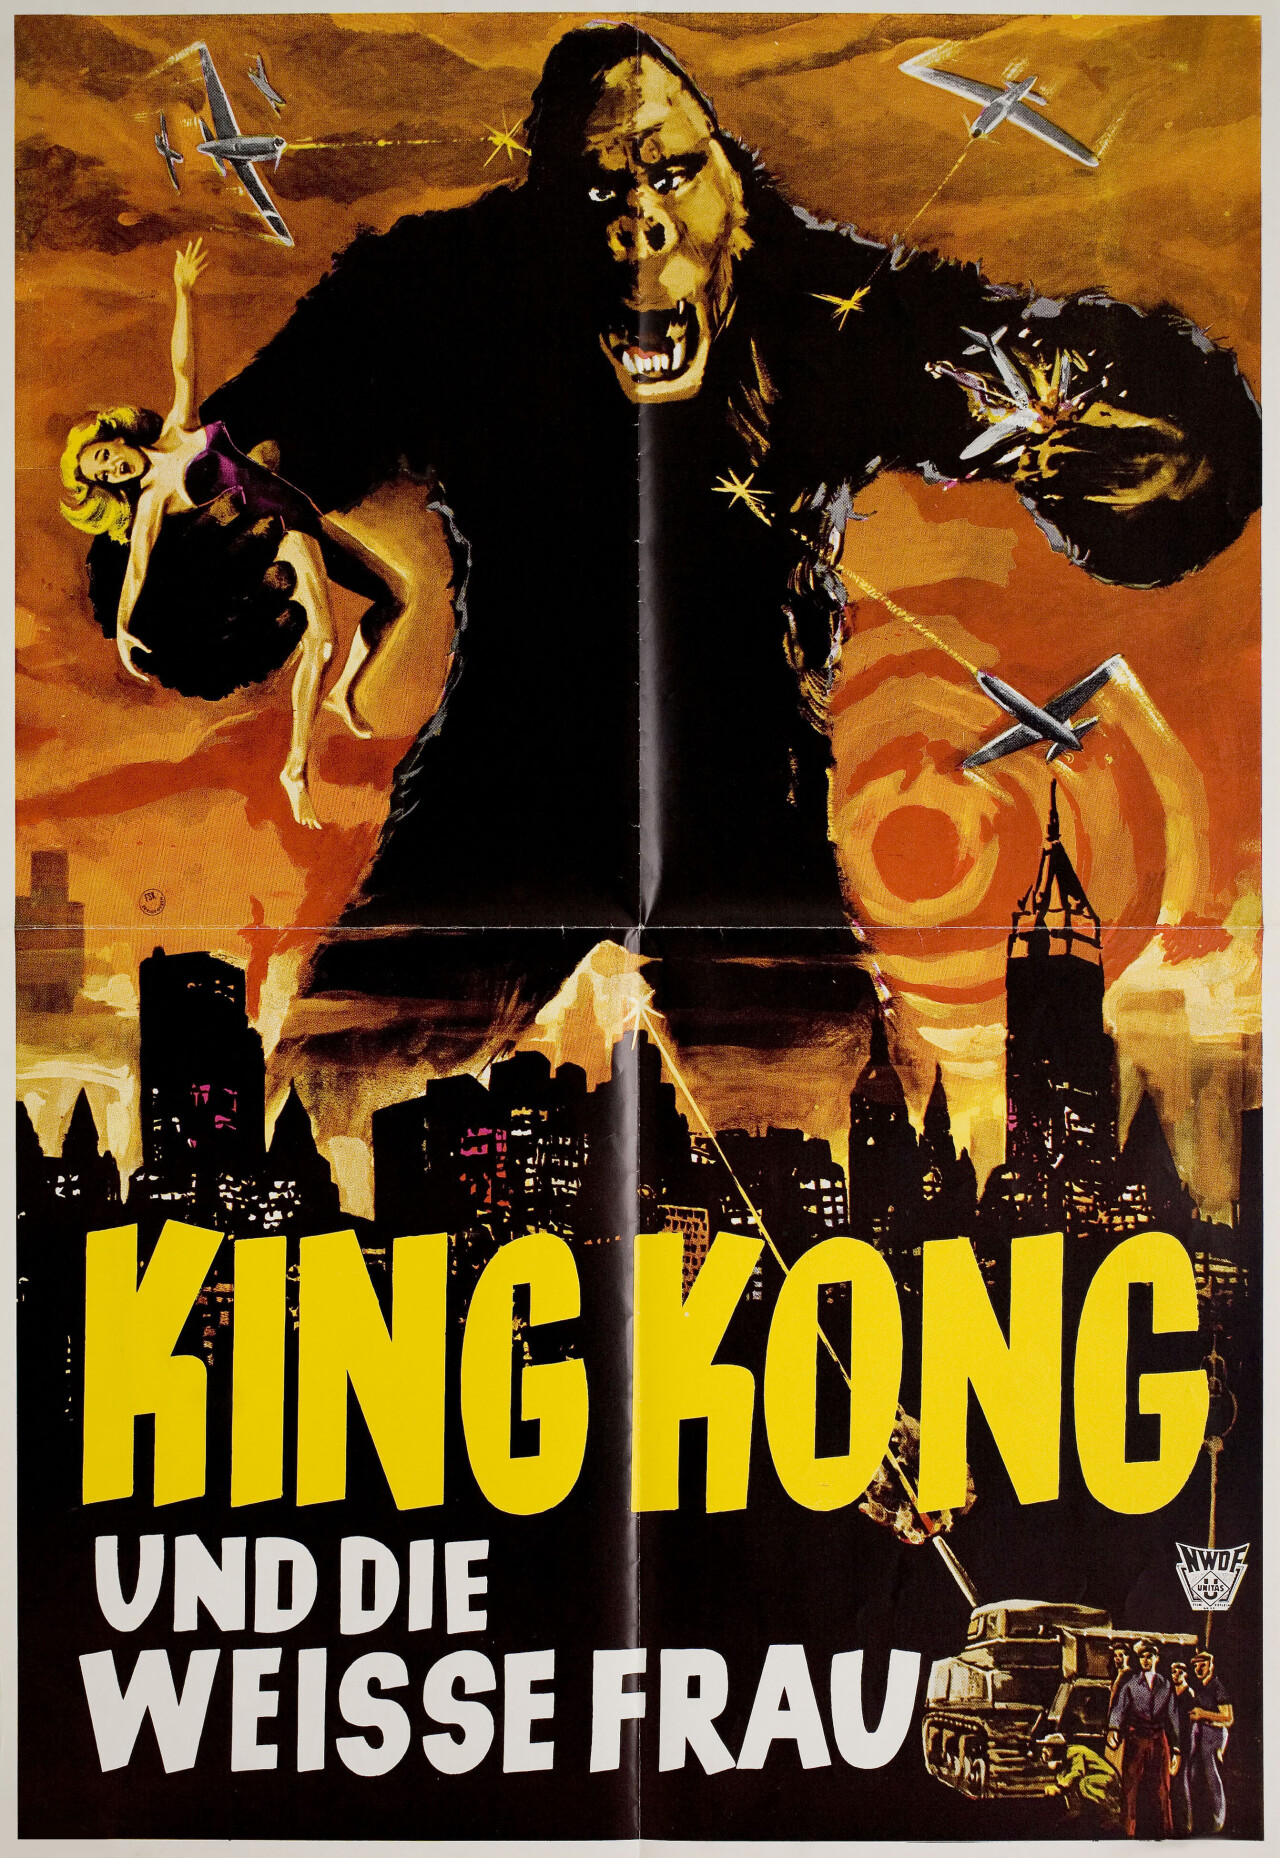 Кинг Конг (King Kong, 1933), режиссёр Мериан К. Купер, немецкий постер к фильму (монстры, 1960 год)